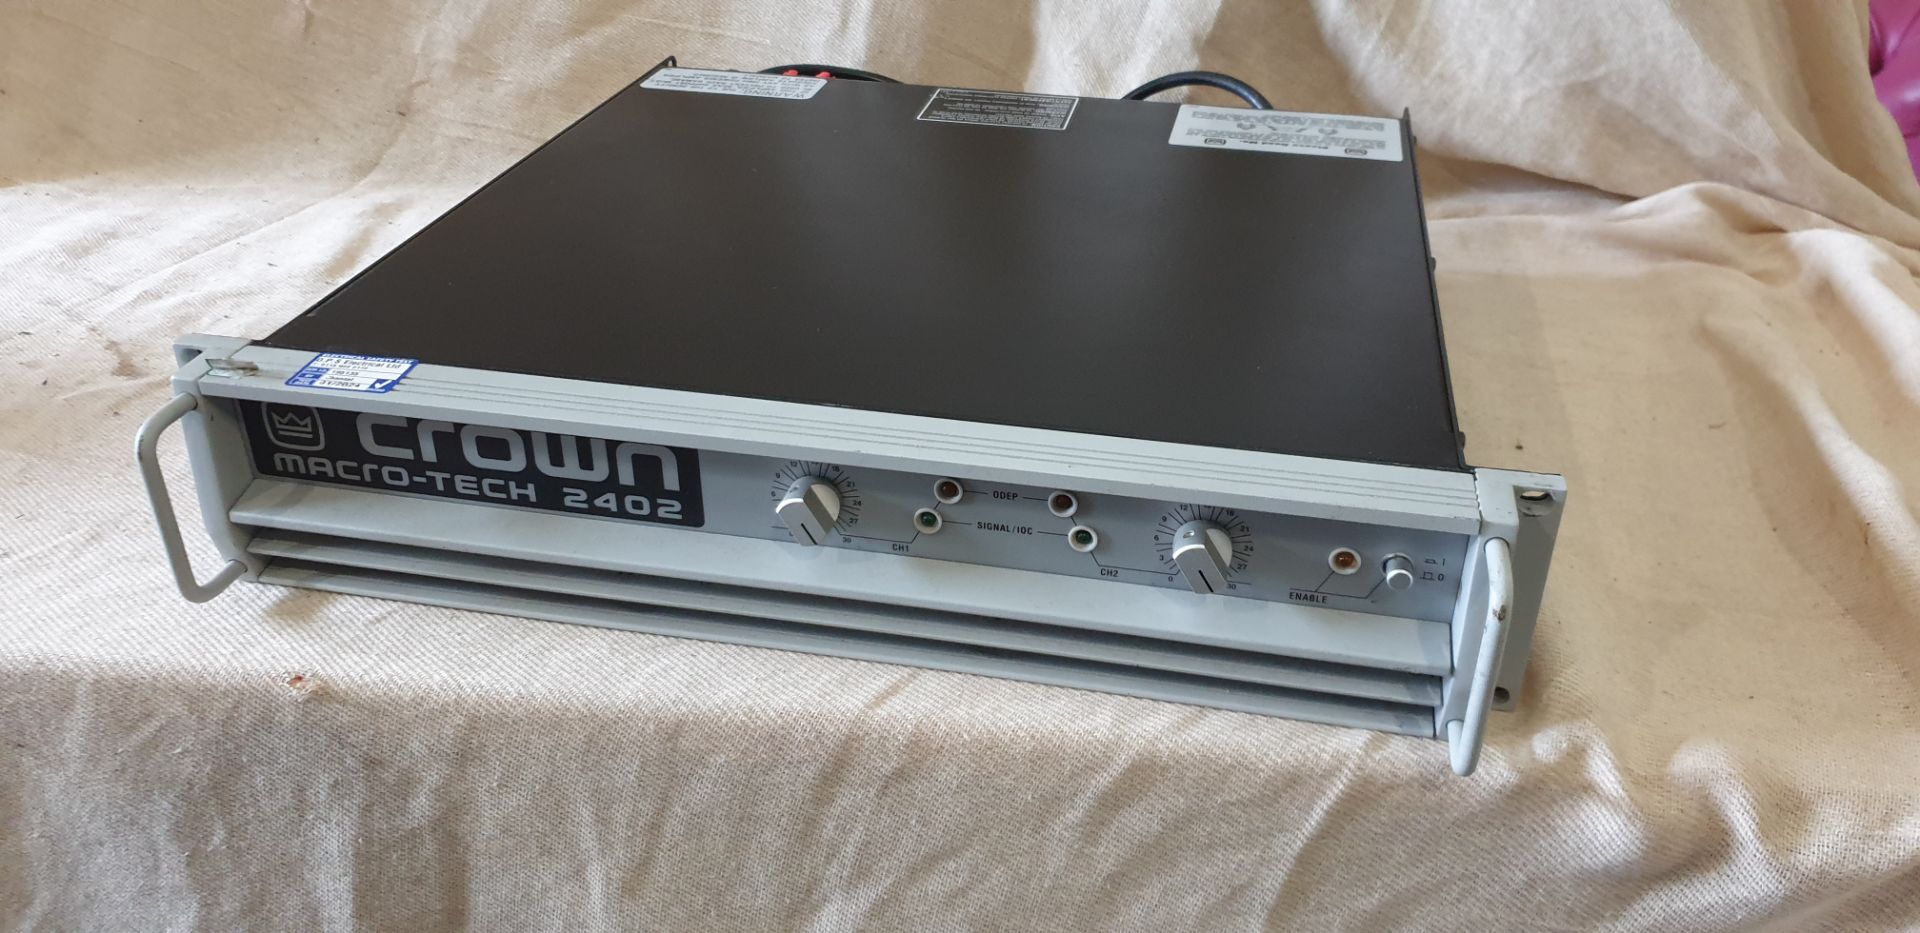 1 ; Crown Macro-Tech 2402 2-Channel Power Amplifier